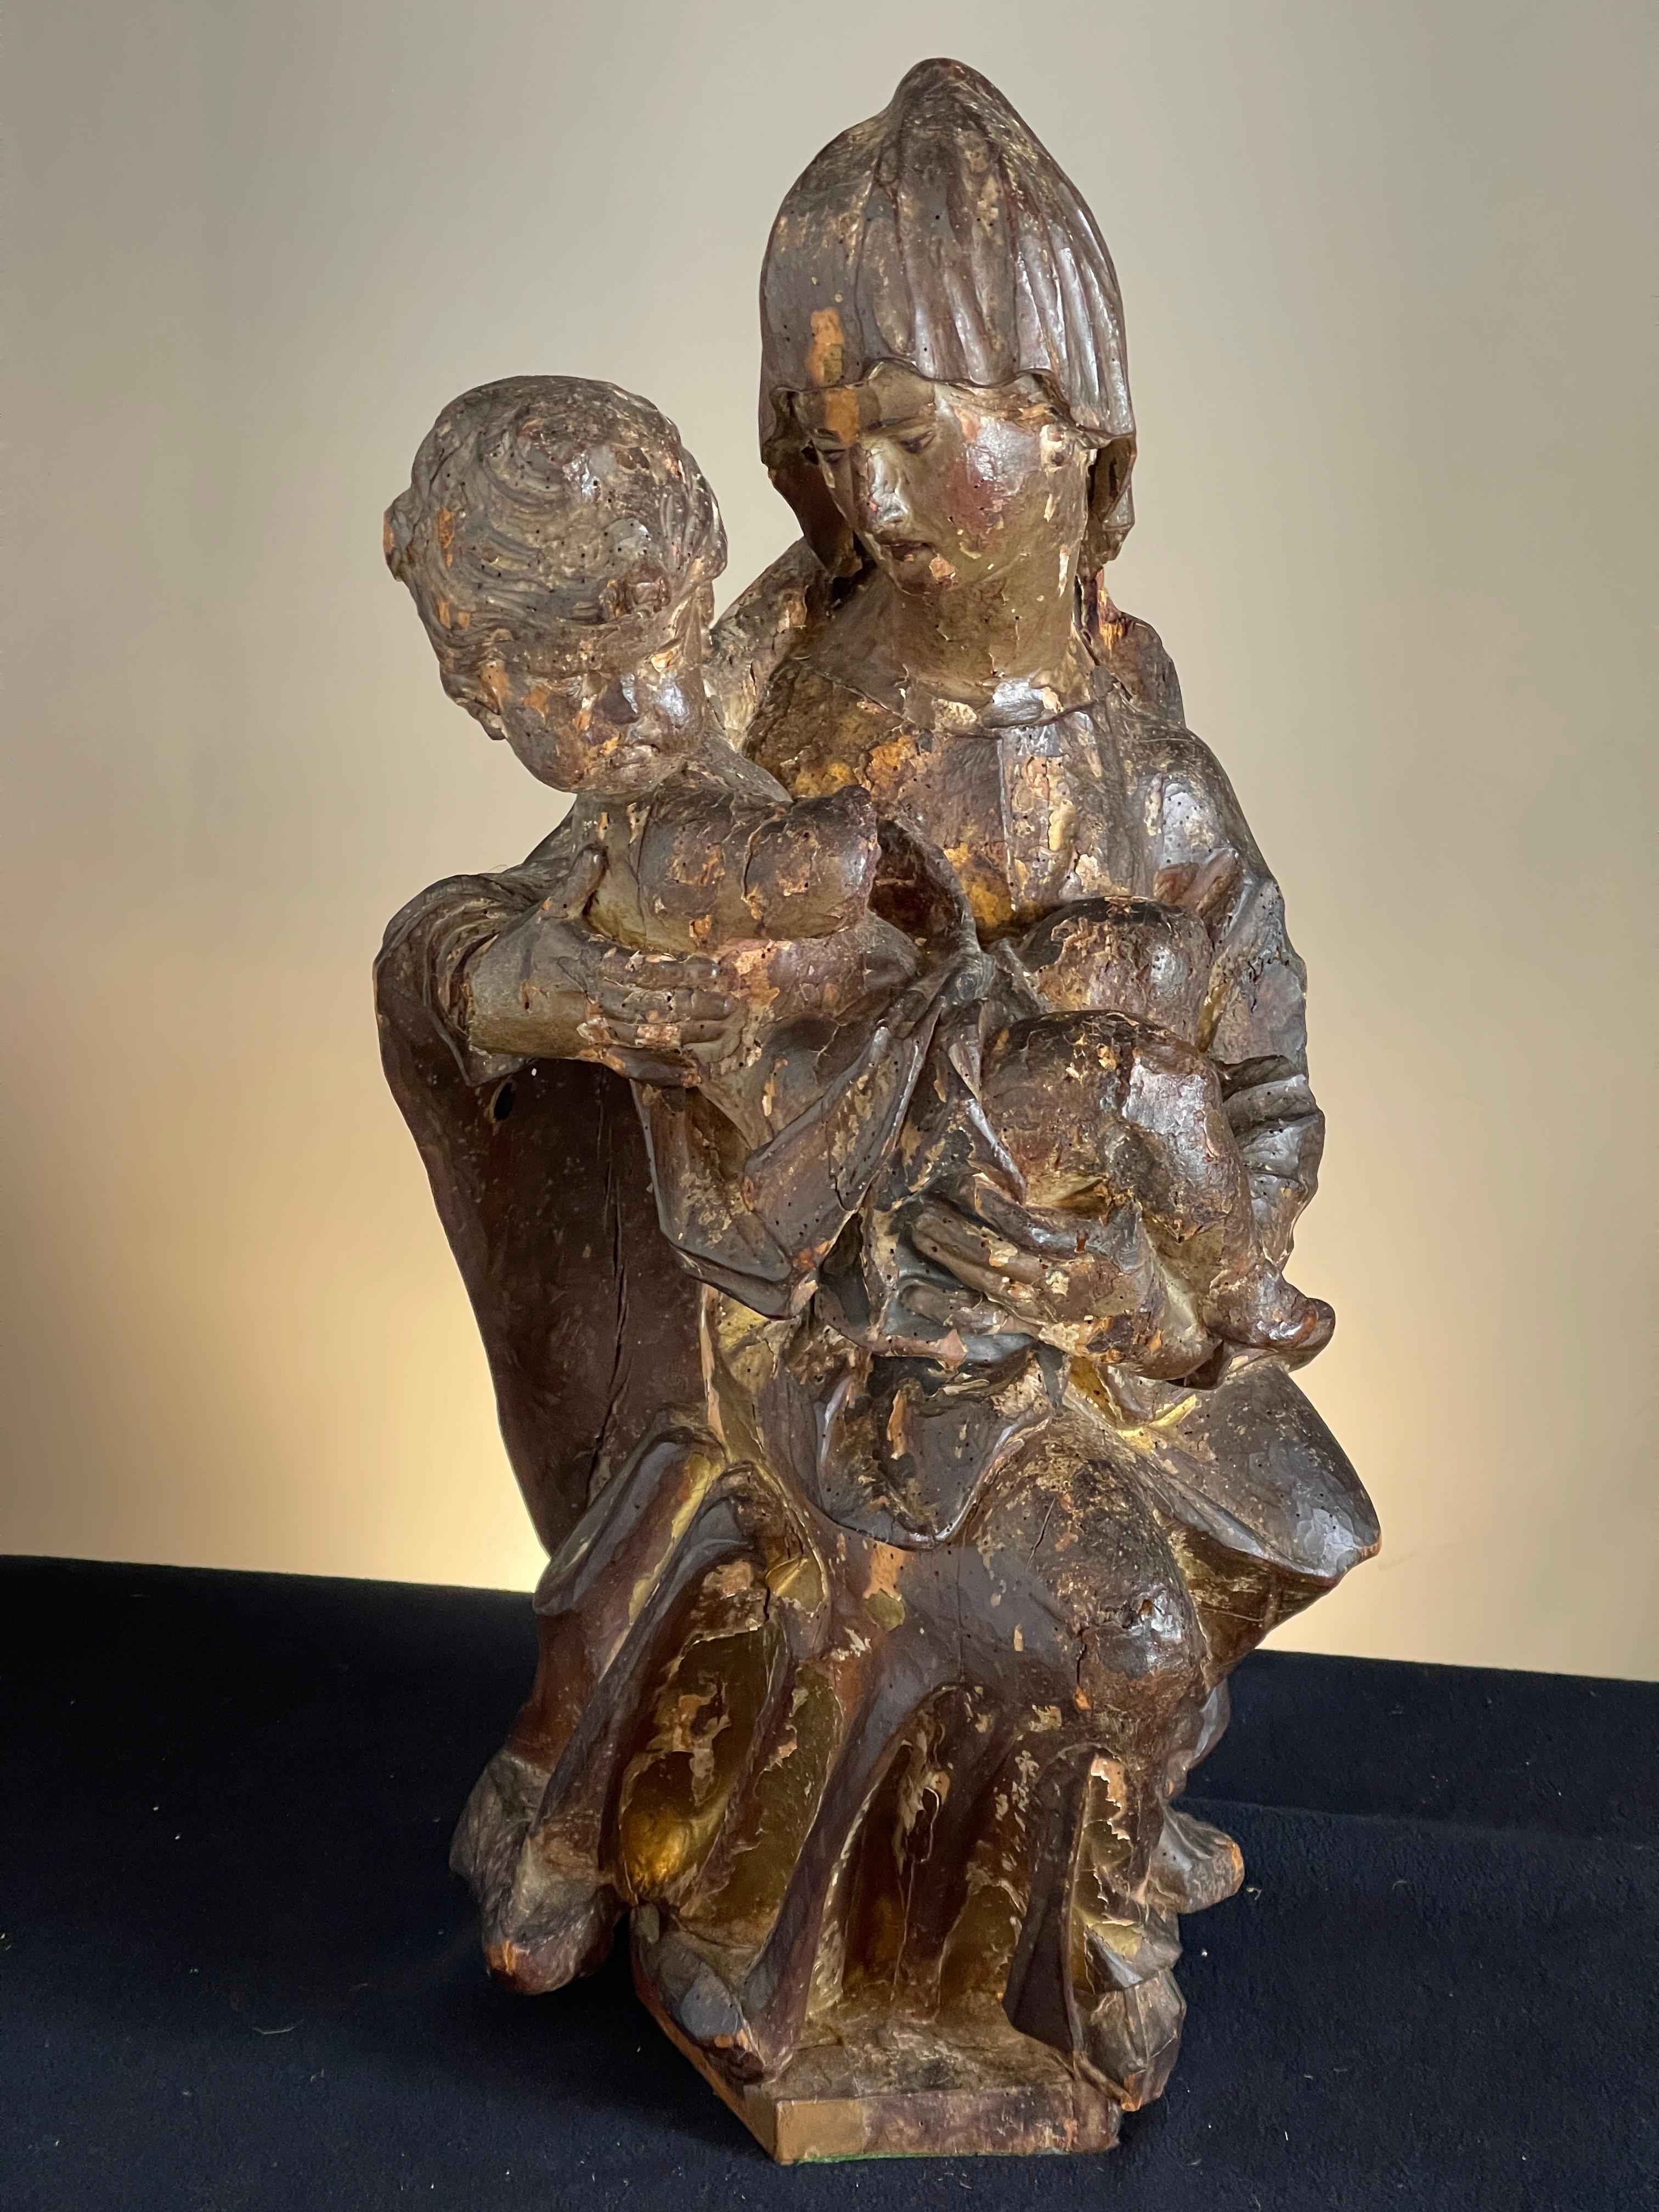 Sculpture en bois de la Madone et de l'enfant du XVIe siècle, conservant une partie de la décoration polychrome d'origine

dimensions : 67 cm de haut, 30 cm de large et 25 cm de profondeur